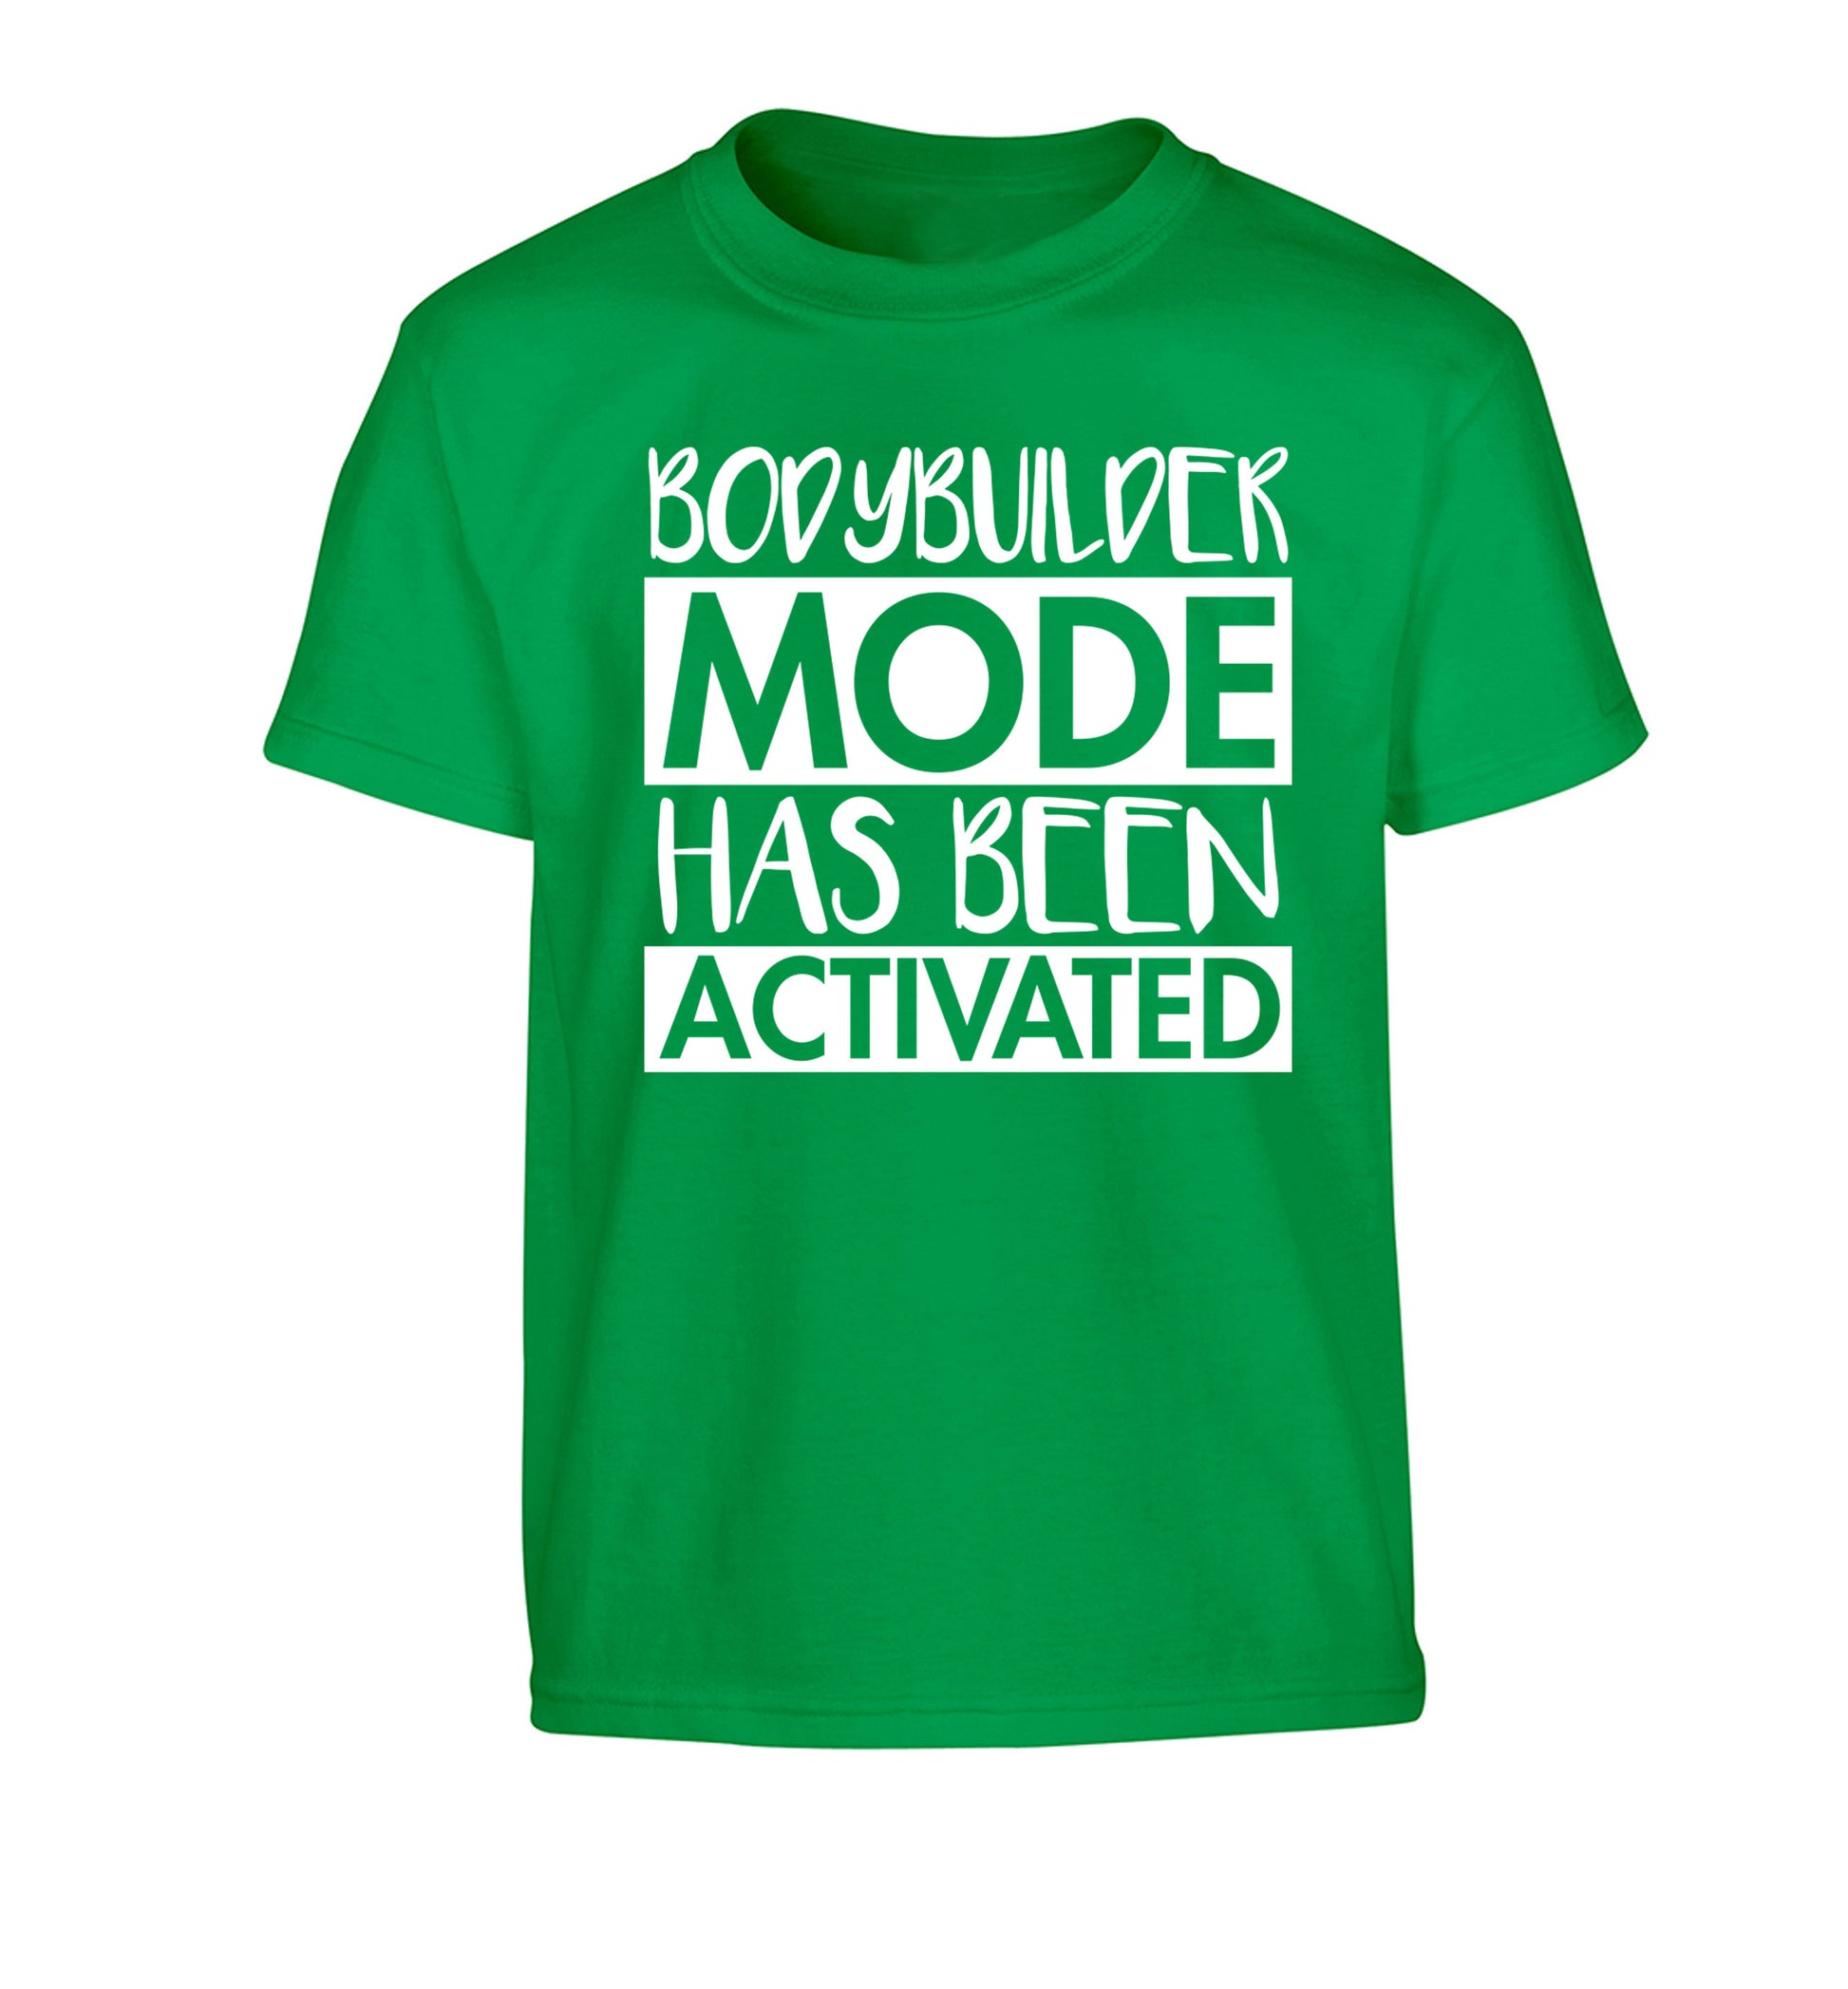 Bodybuilder mode activated Children's green Tshirt 12-14 Years